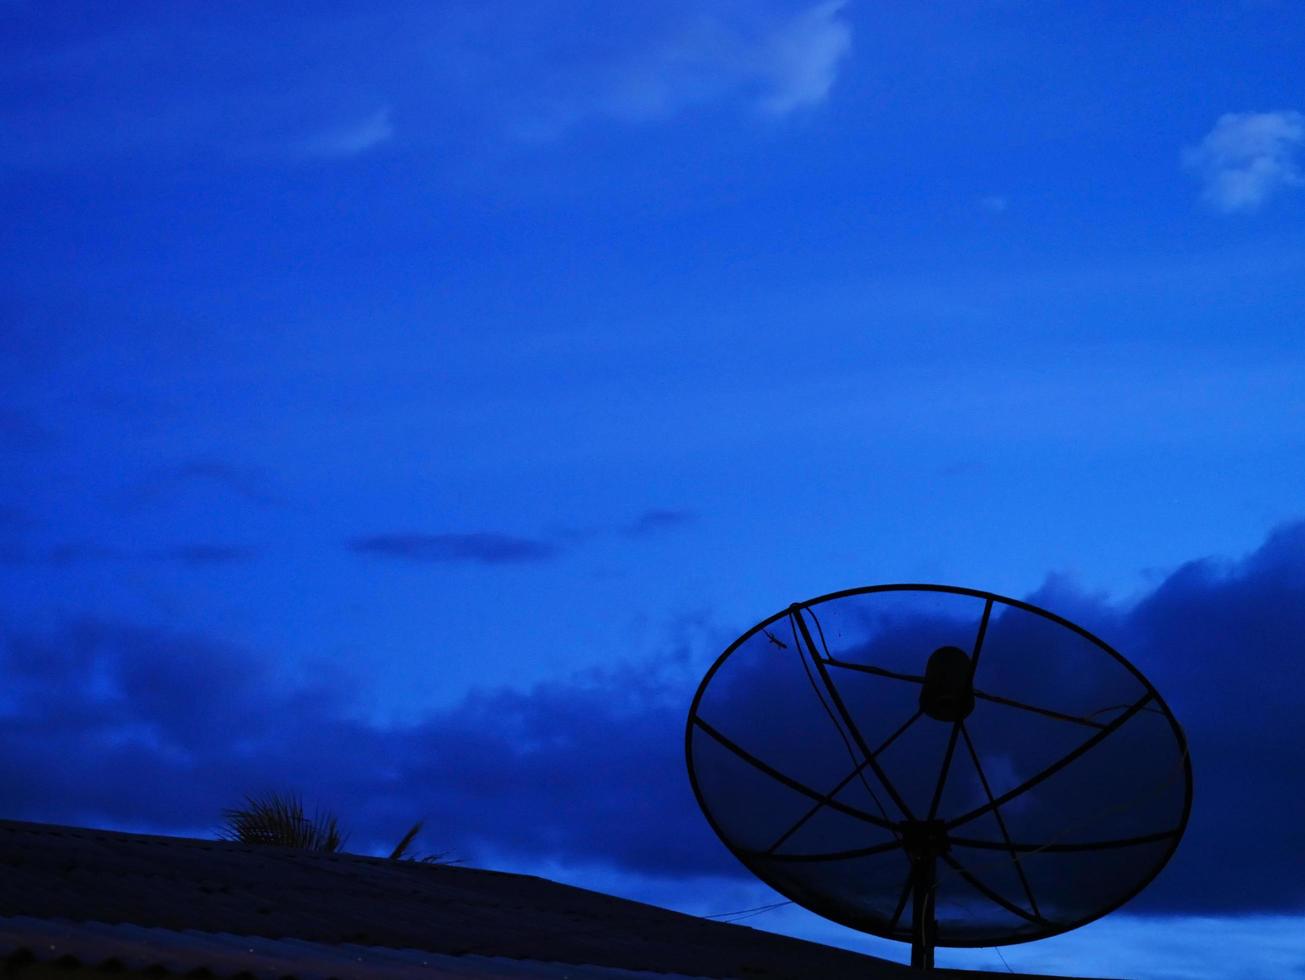 a antena parabólica foi instalada na casa à noite. foto